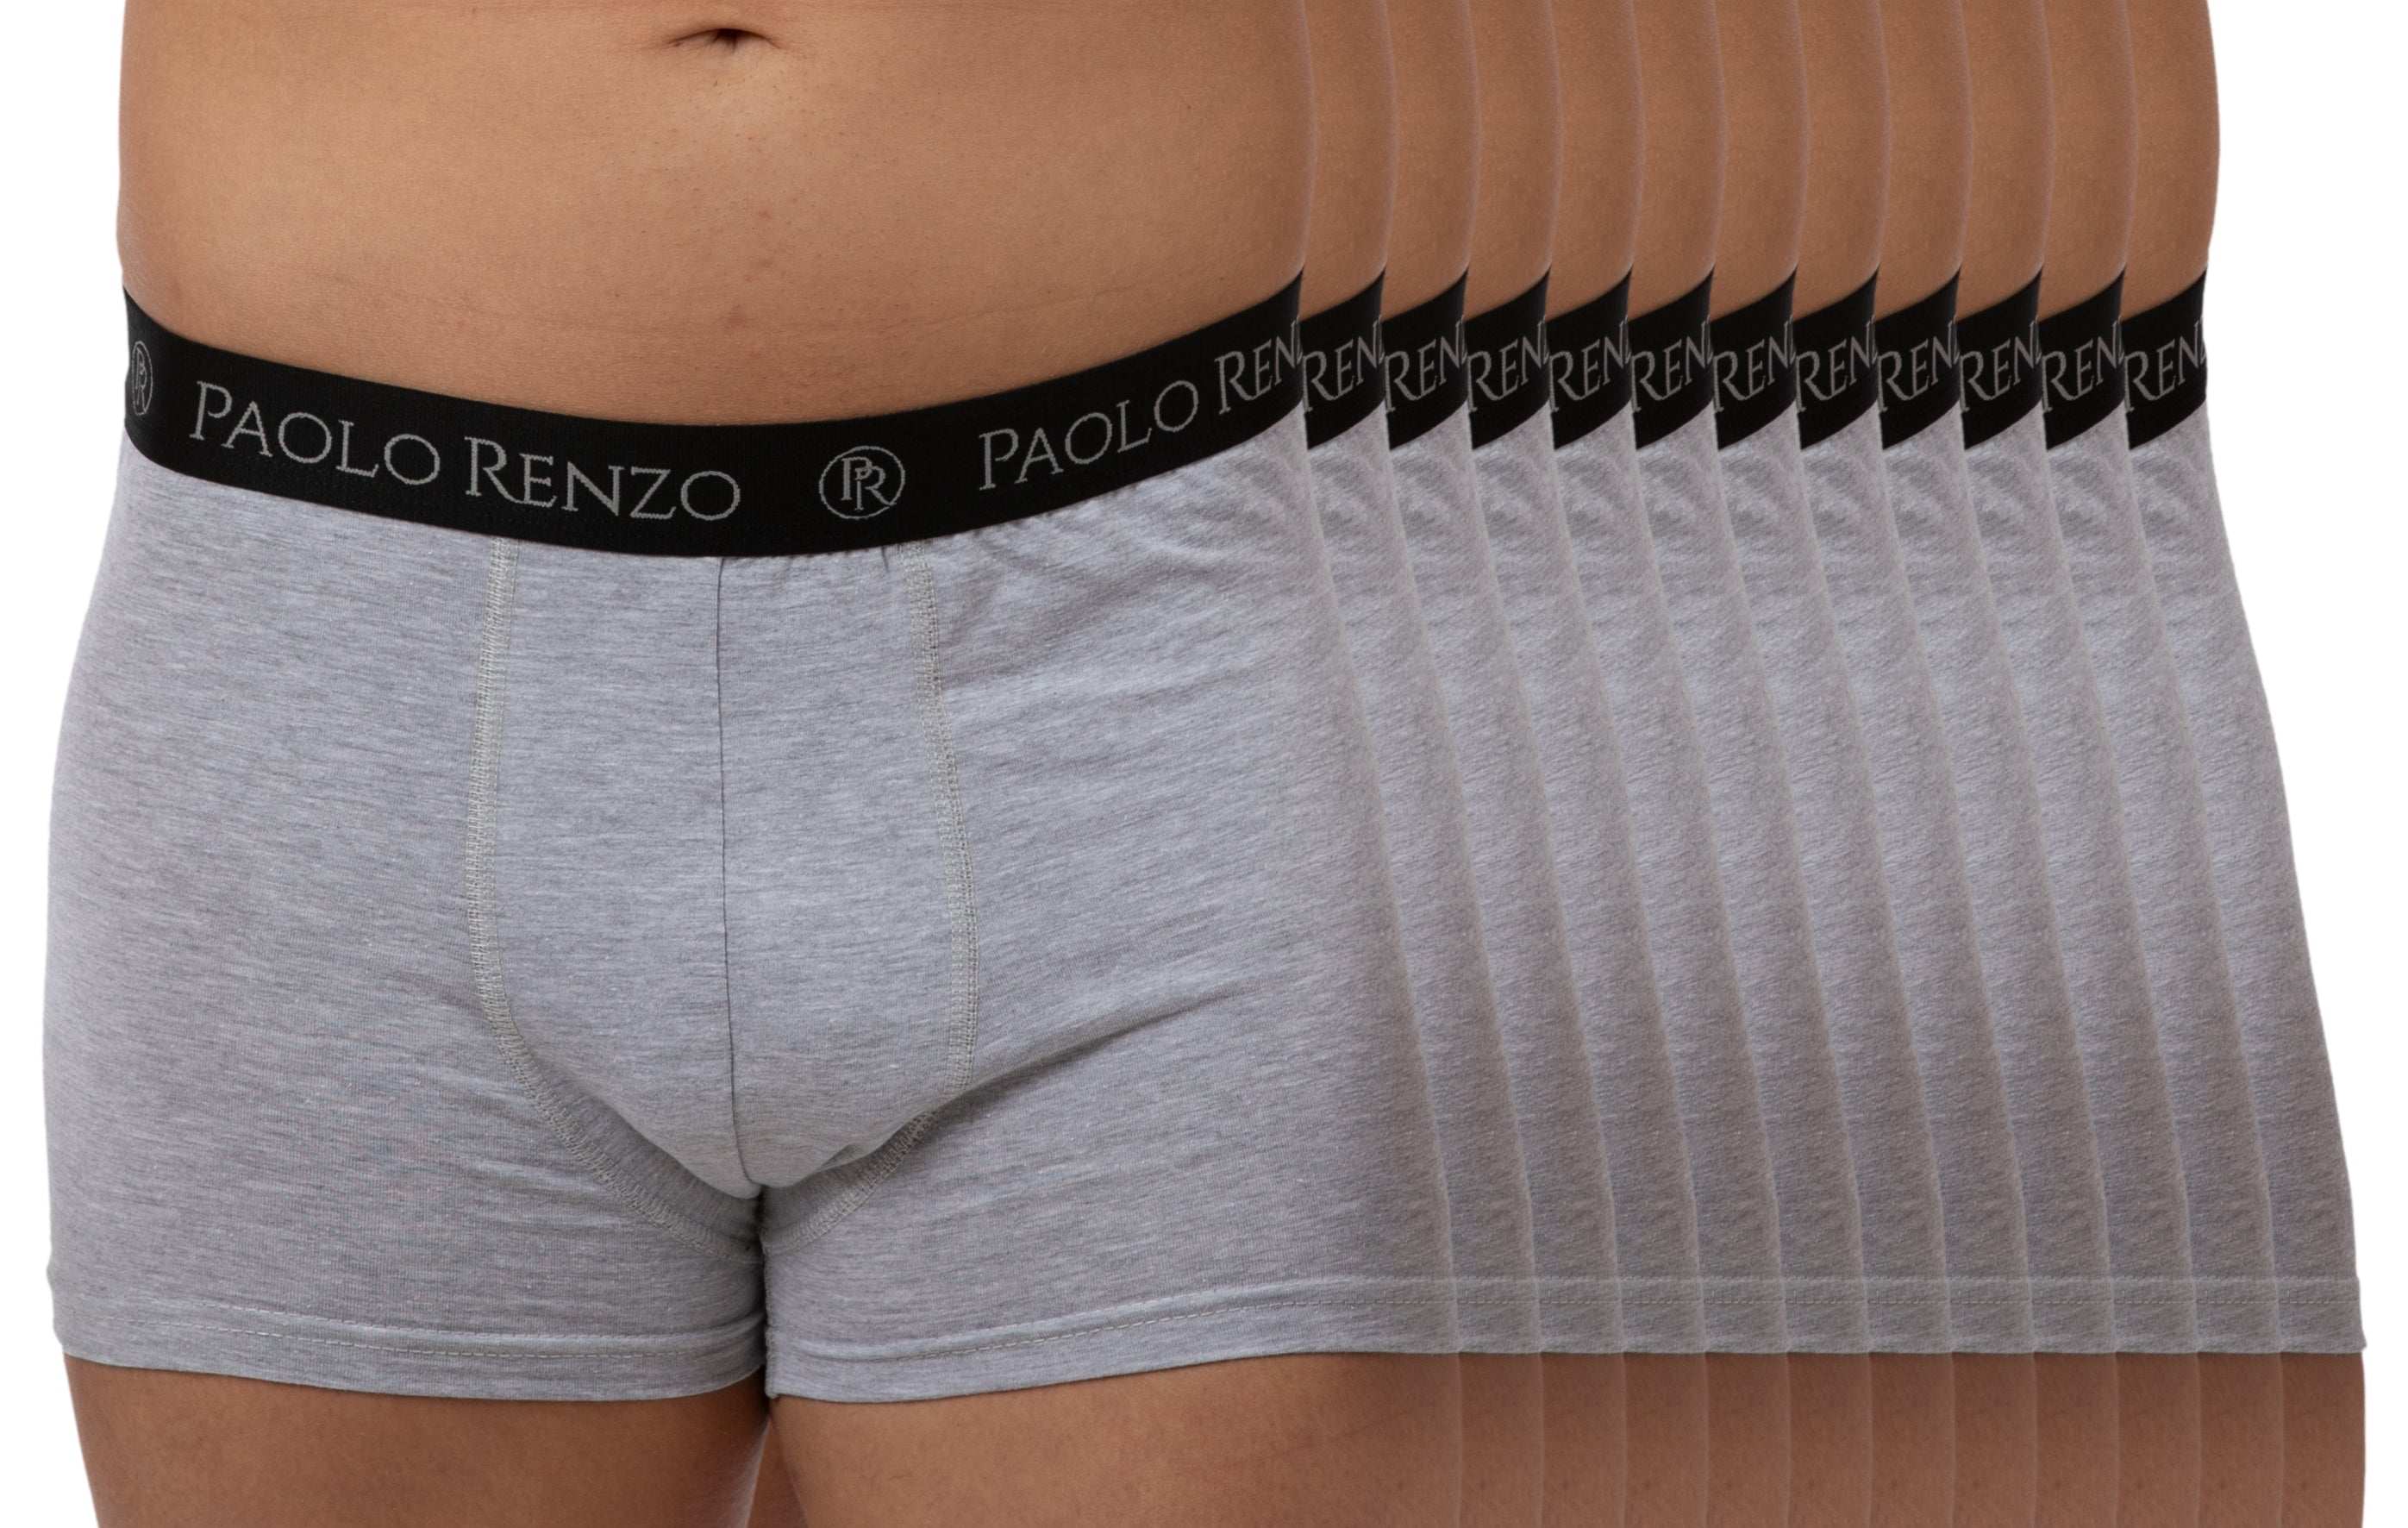 Paolo Traumpreisfabrik Hipster 12 Boxershorts L, Stück – 3/6 oder Renzo® XL, M, - Größen